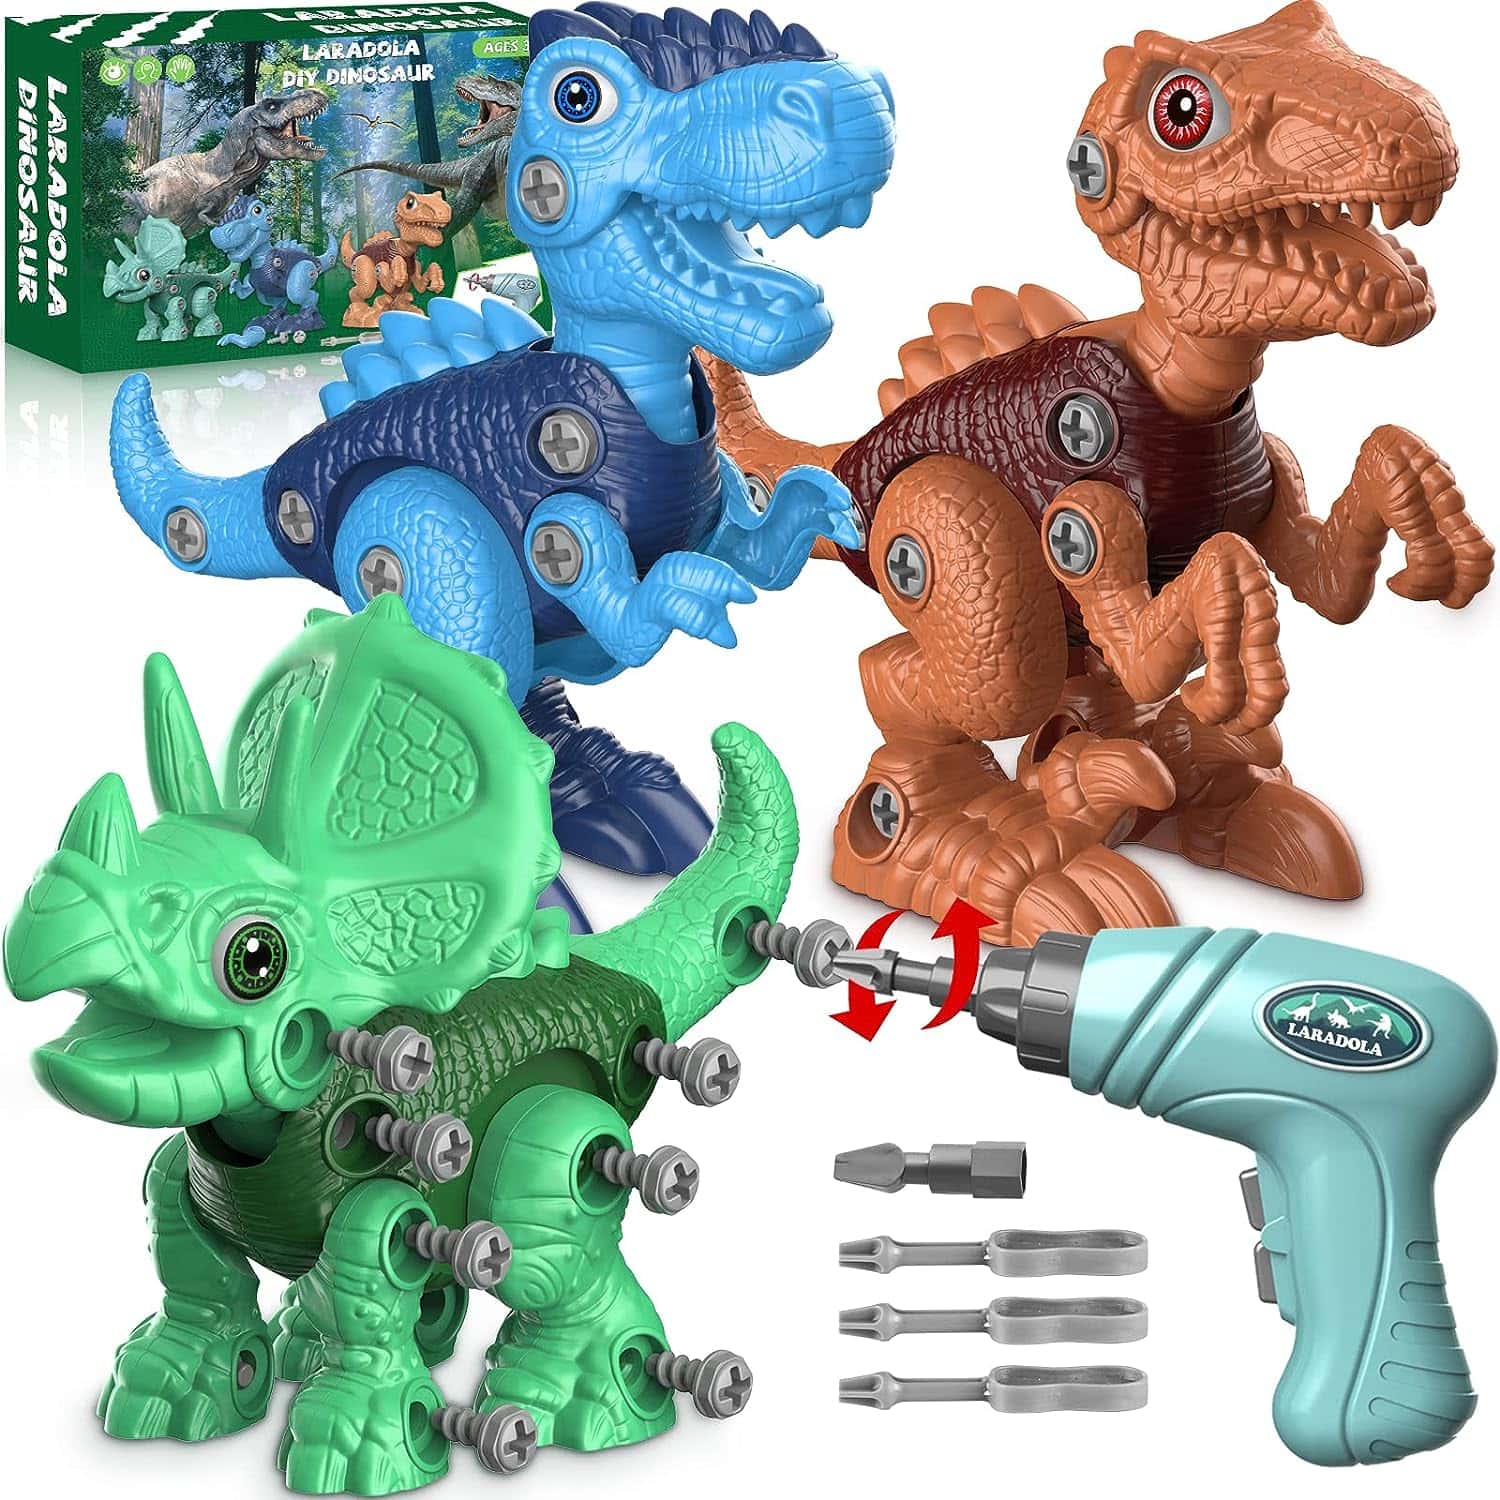 Take-Apart Dinosaur STEM Toy